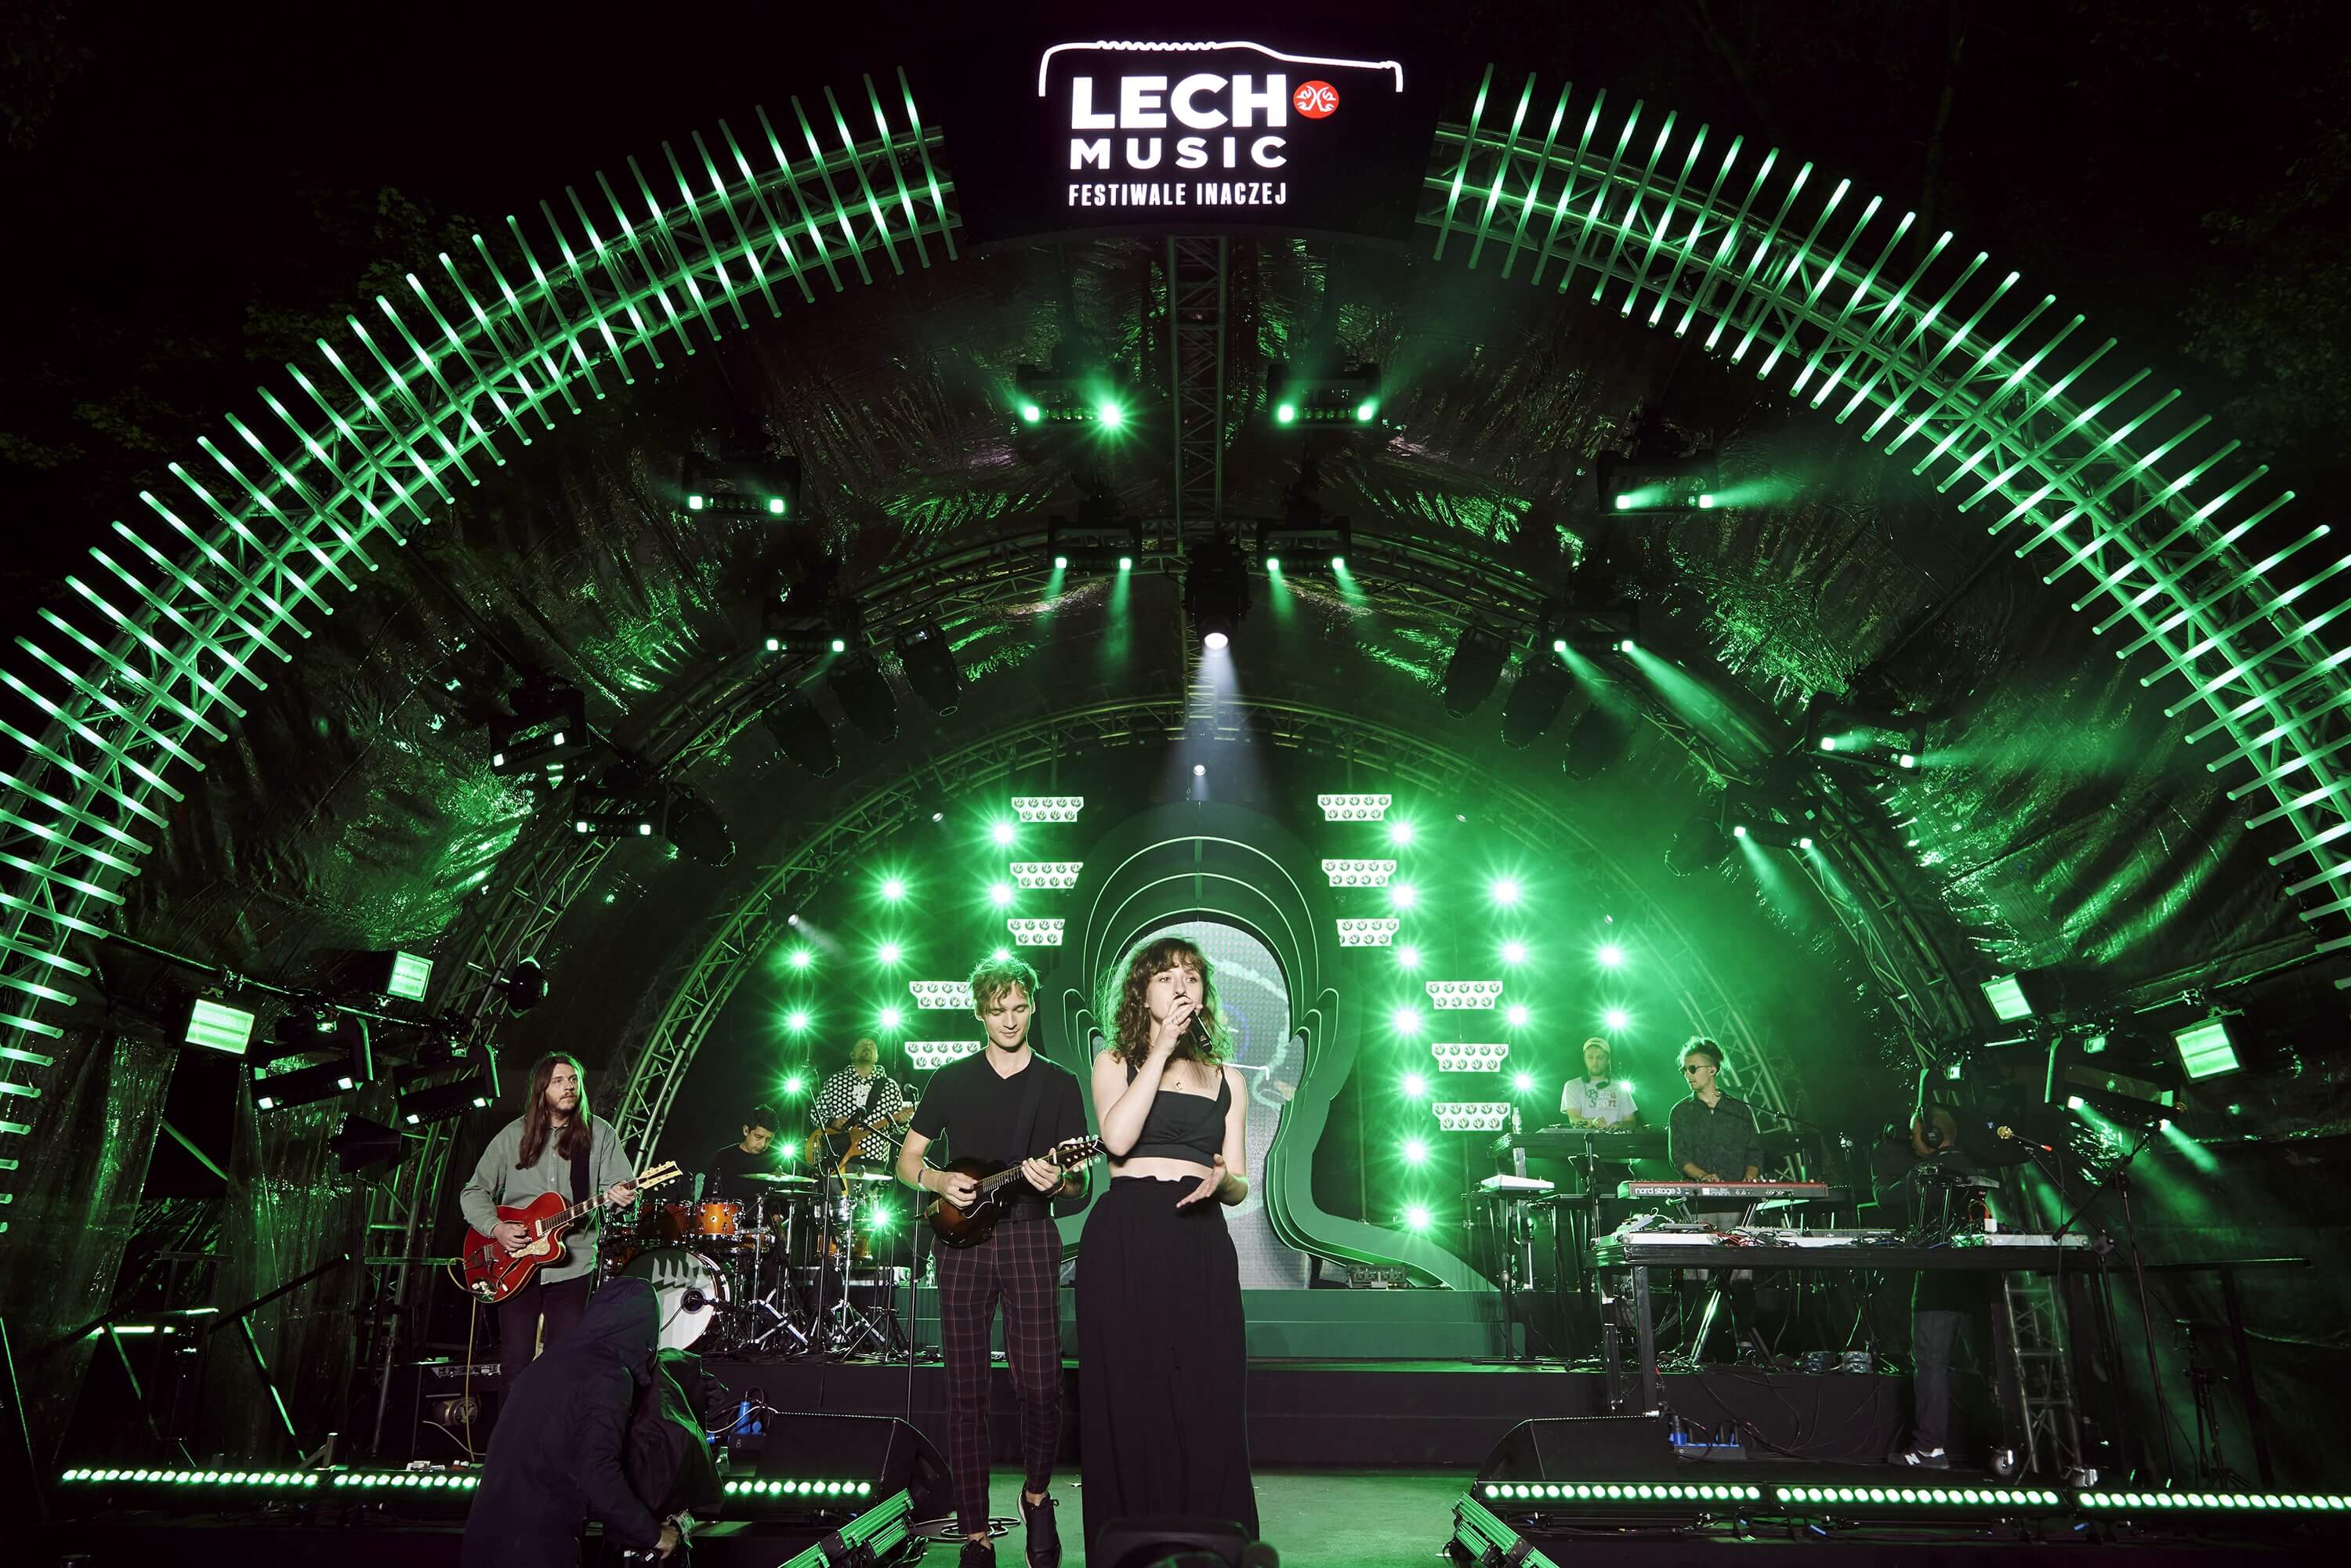 FINAŁ Lech Music: Festiwale Inaczej 12 artystów na jednej scenie podczas wyjątkowego koncertu projektu Albo Inaczej i Lecha